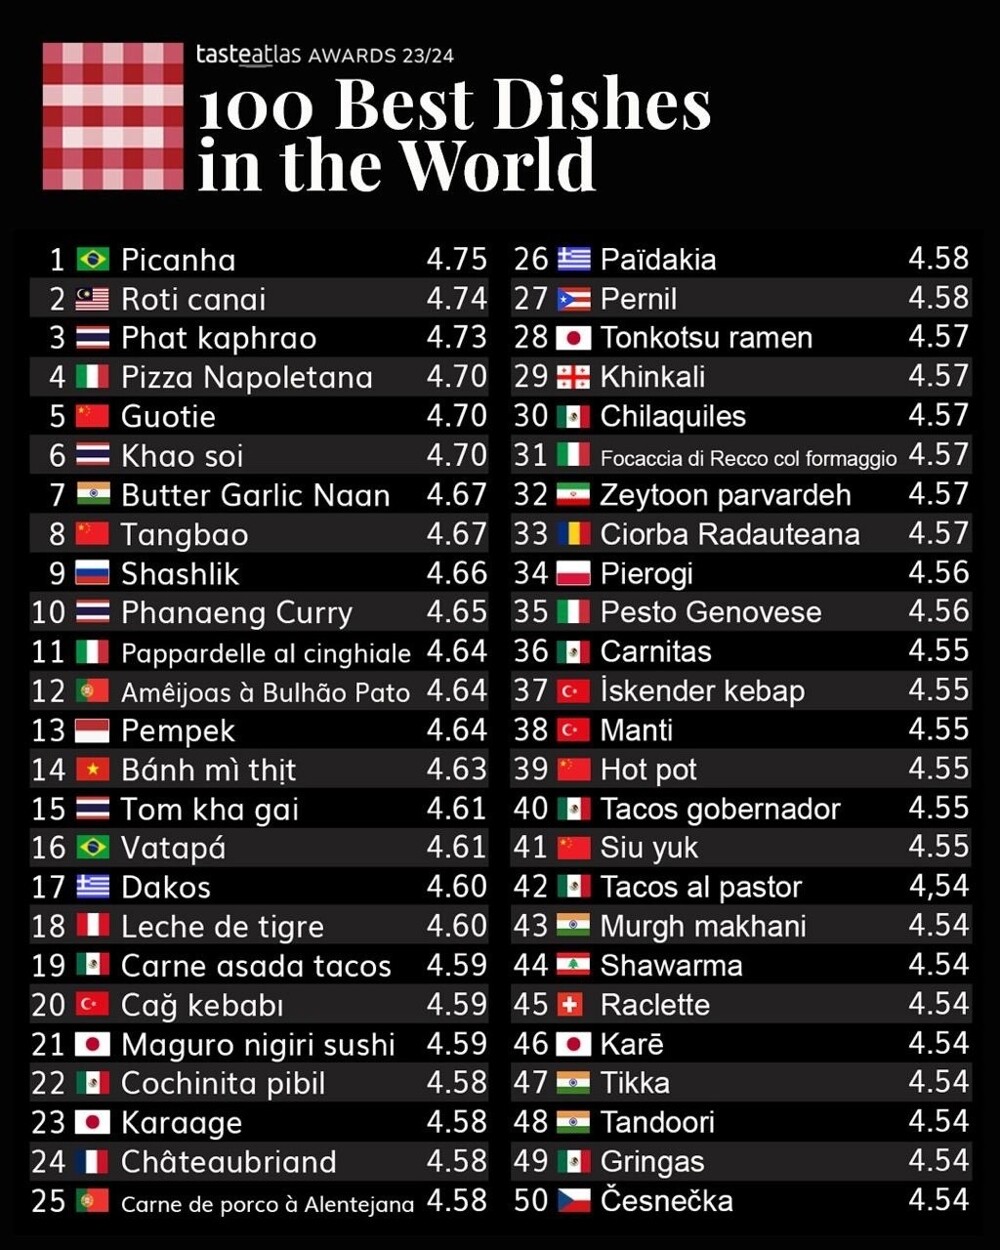 Шашлык занял 9-е место в топ-100 блюд мира